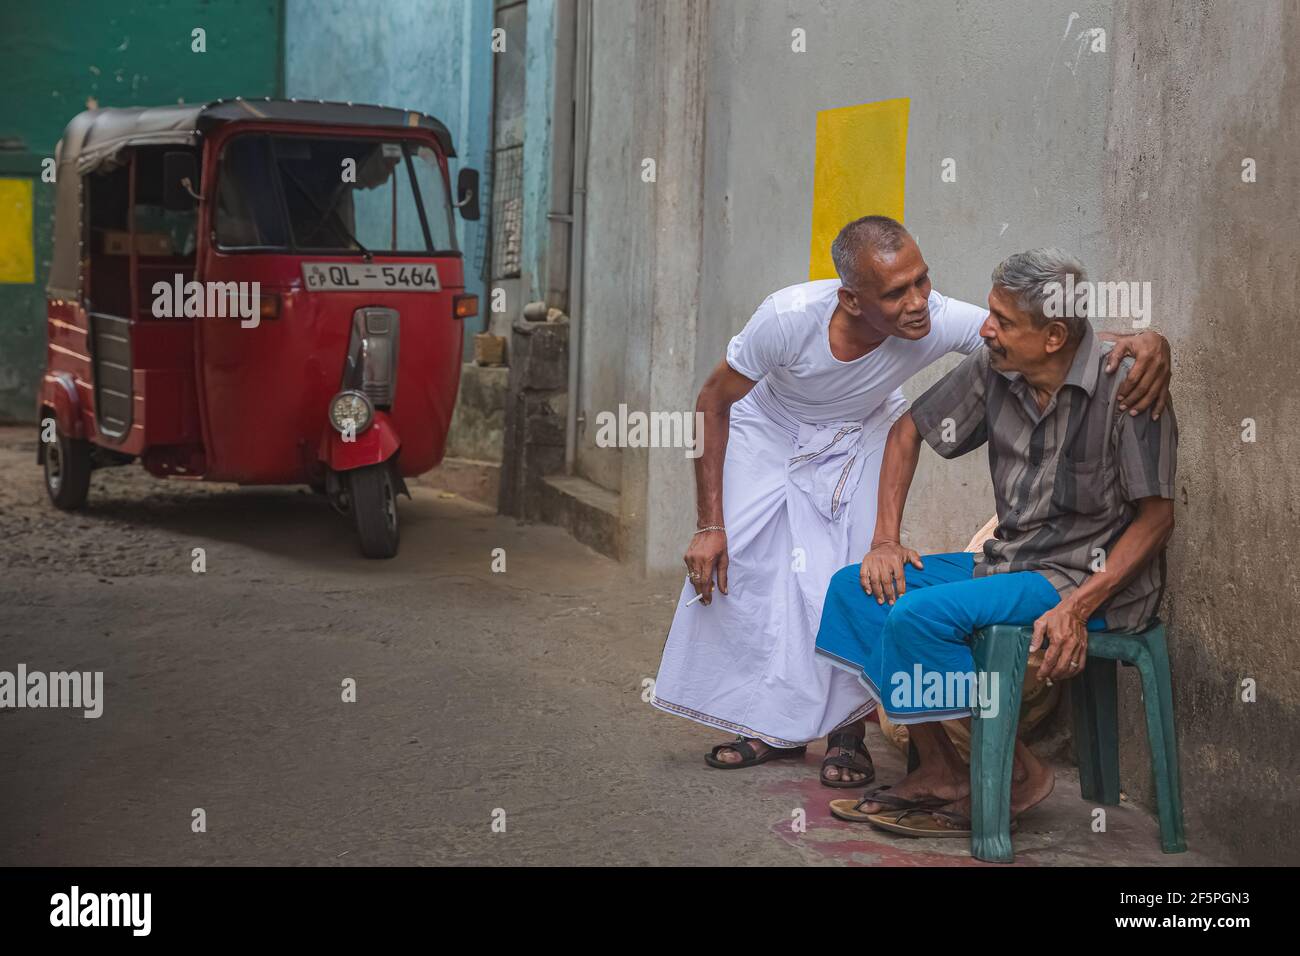 Kandy, Sri Lanka - März 21 2019: Ehrliches, freundliches Geplänkel zwischen zwei lokalen Sri-lankischen Männern, einer in einem weißen Kasaya, am Magha Puja Tag in Kandy, Sri Lan Stockfoto